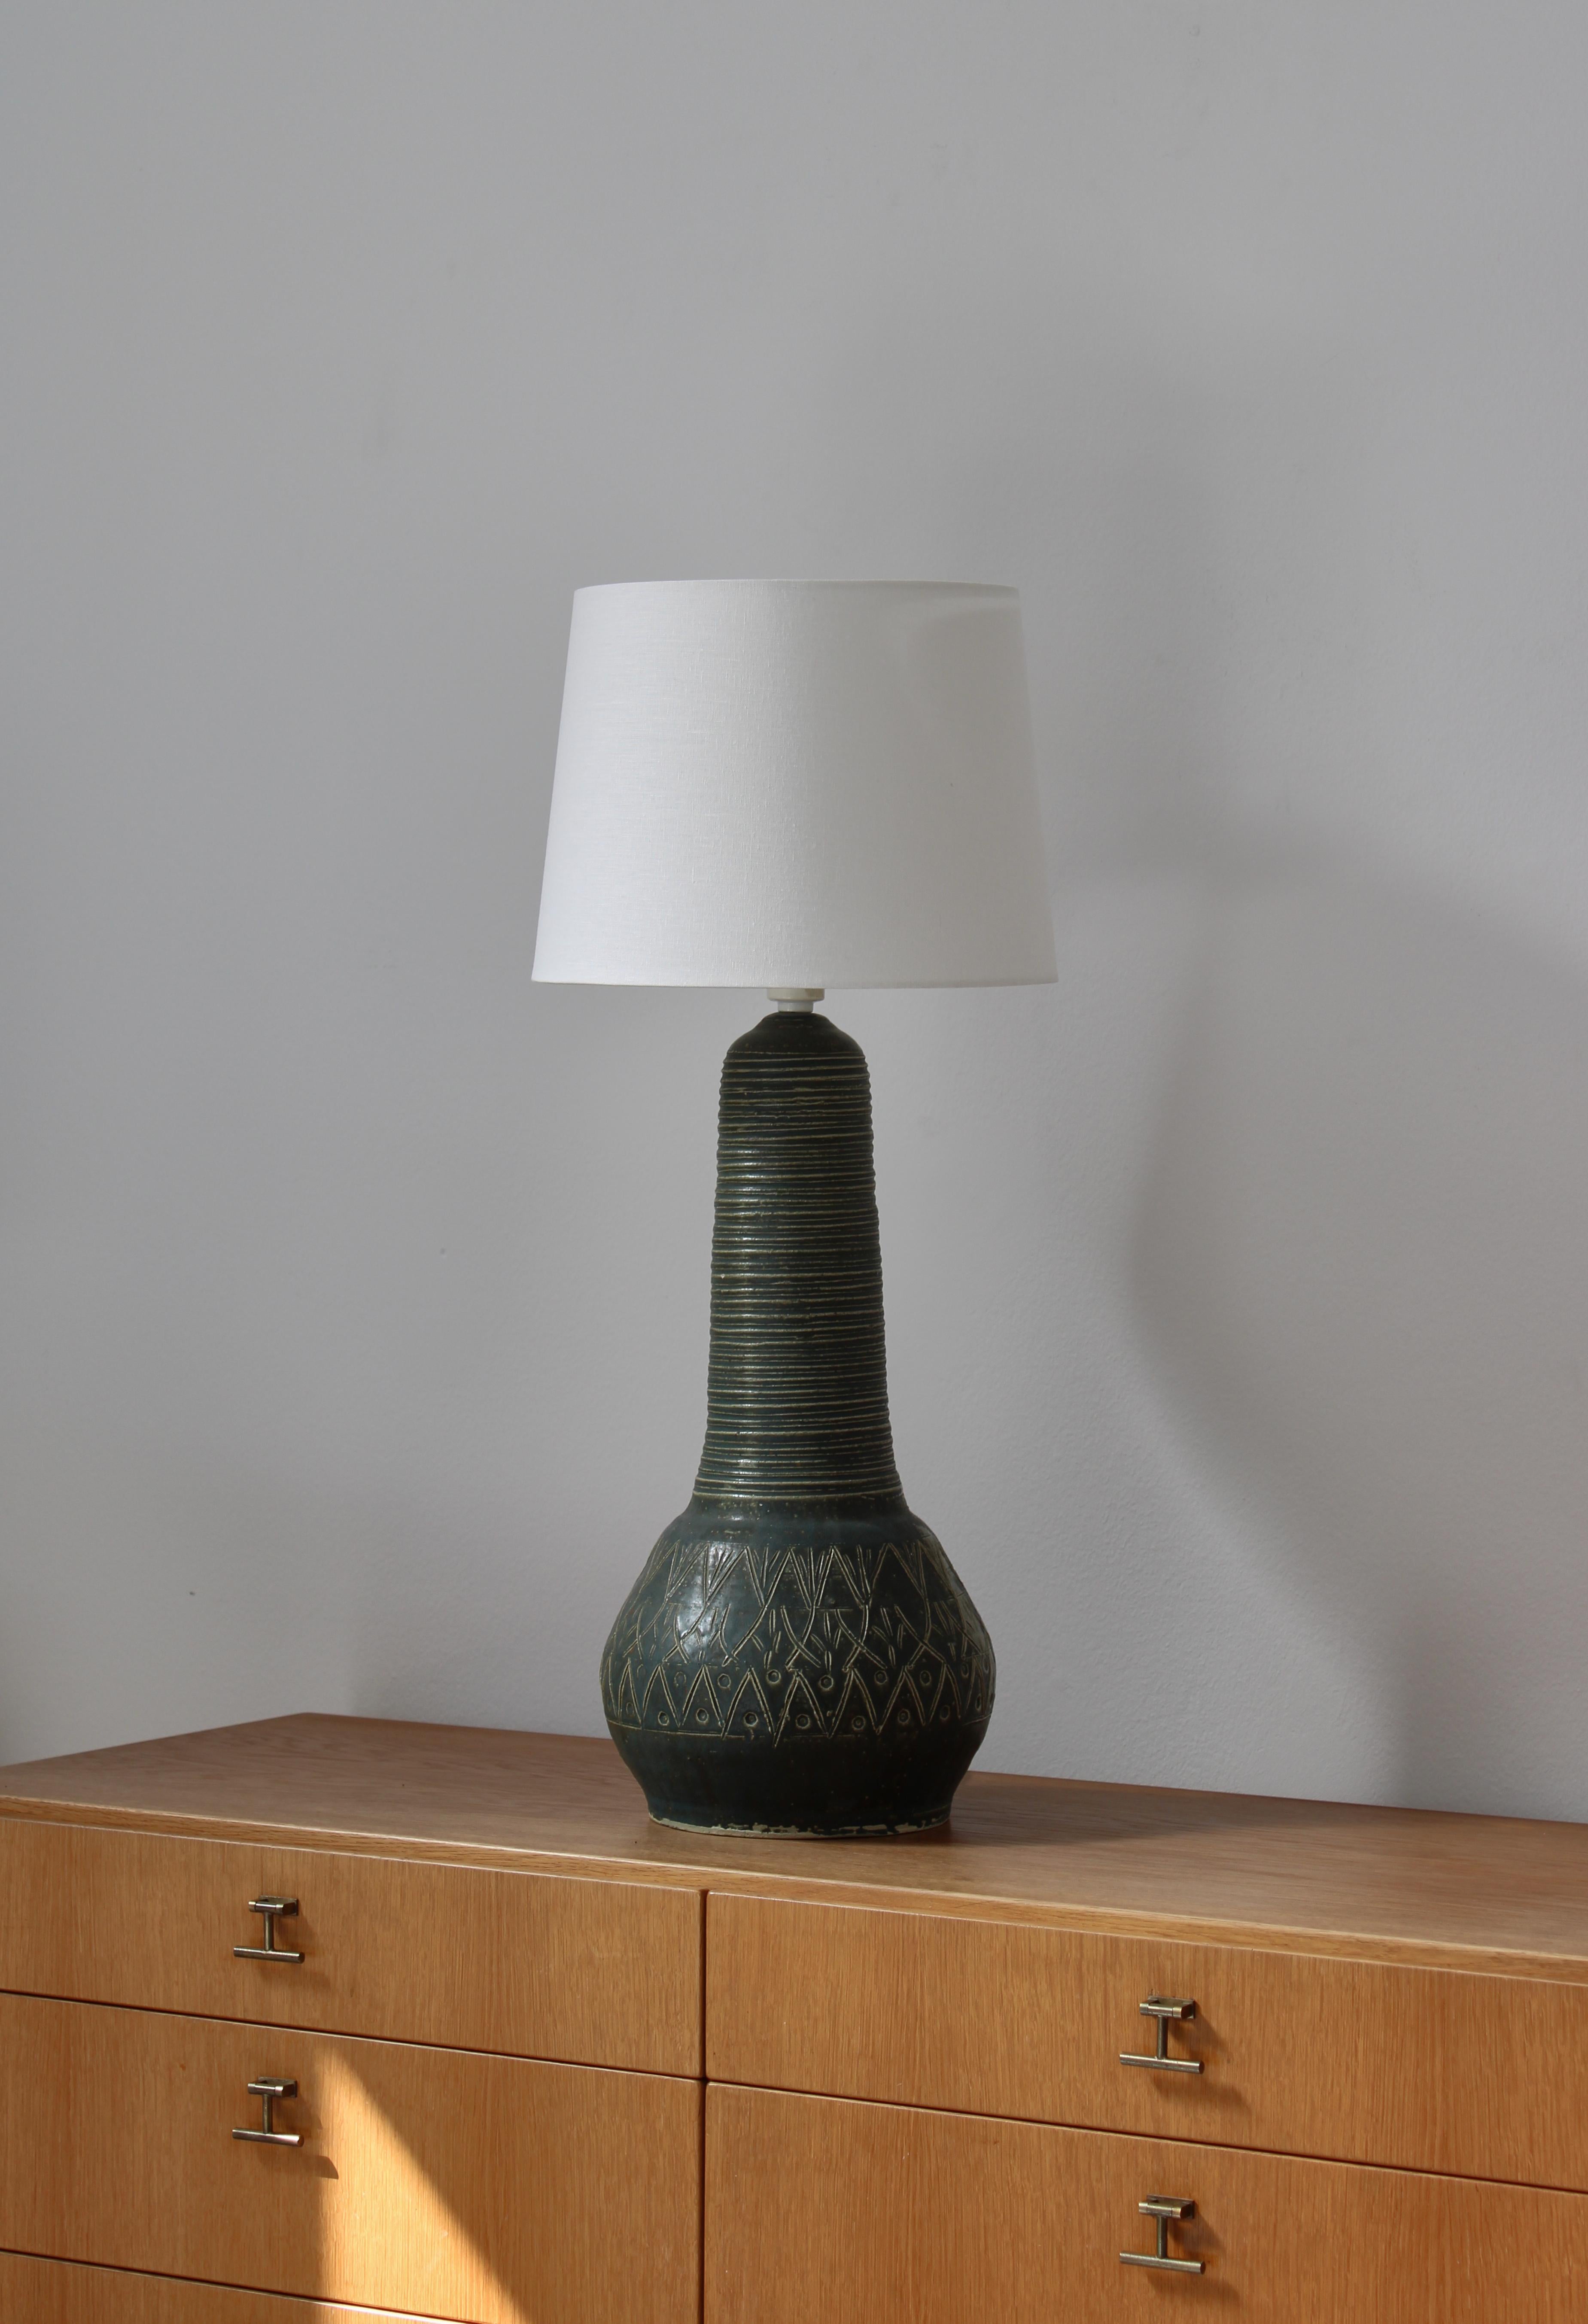 Grande lampe de table fabriquée à la main dans les années 1960 au Danemark dans un style moderne. Magnifique glaçage vert et décors organiques abstraits incisés. Non signé mais de grande qualité dans le style de 